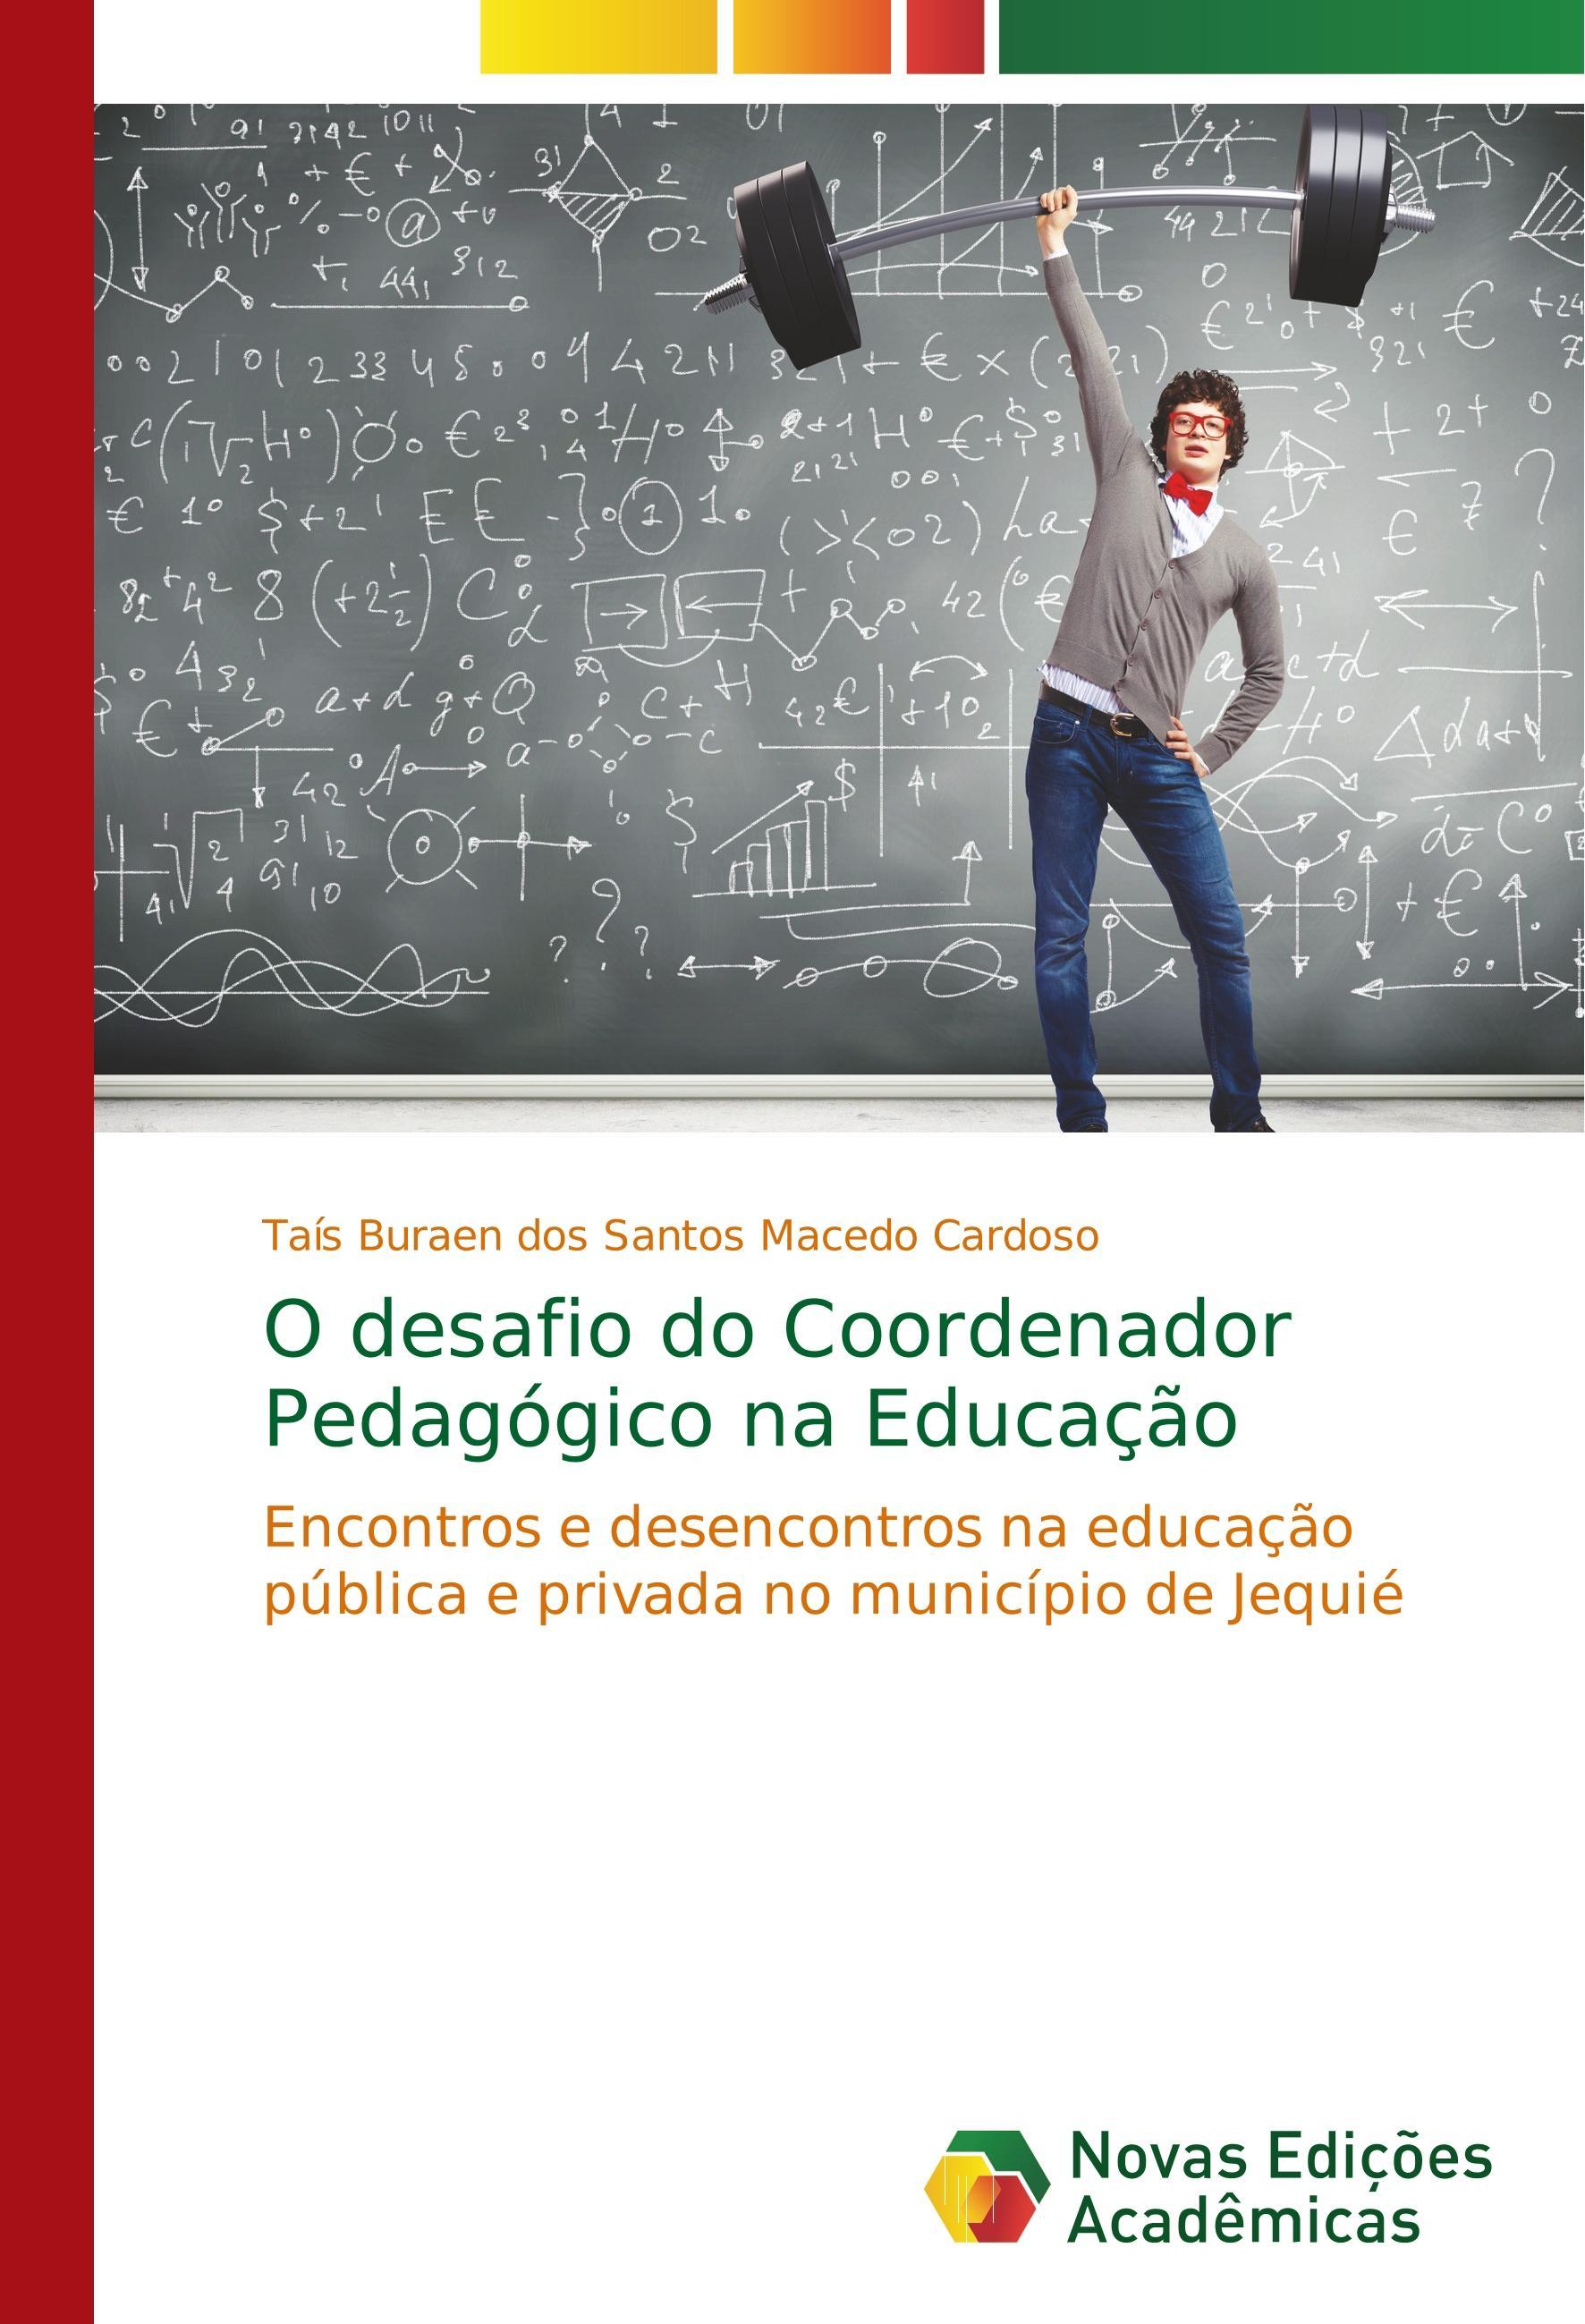 O desafio do Coordenador Pedagógico na Educação - Buraen dos Santos Macedo Cardoso, Taís